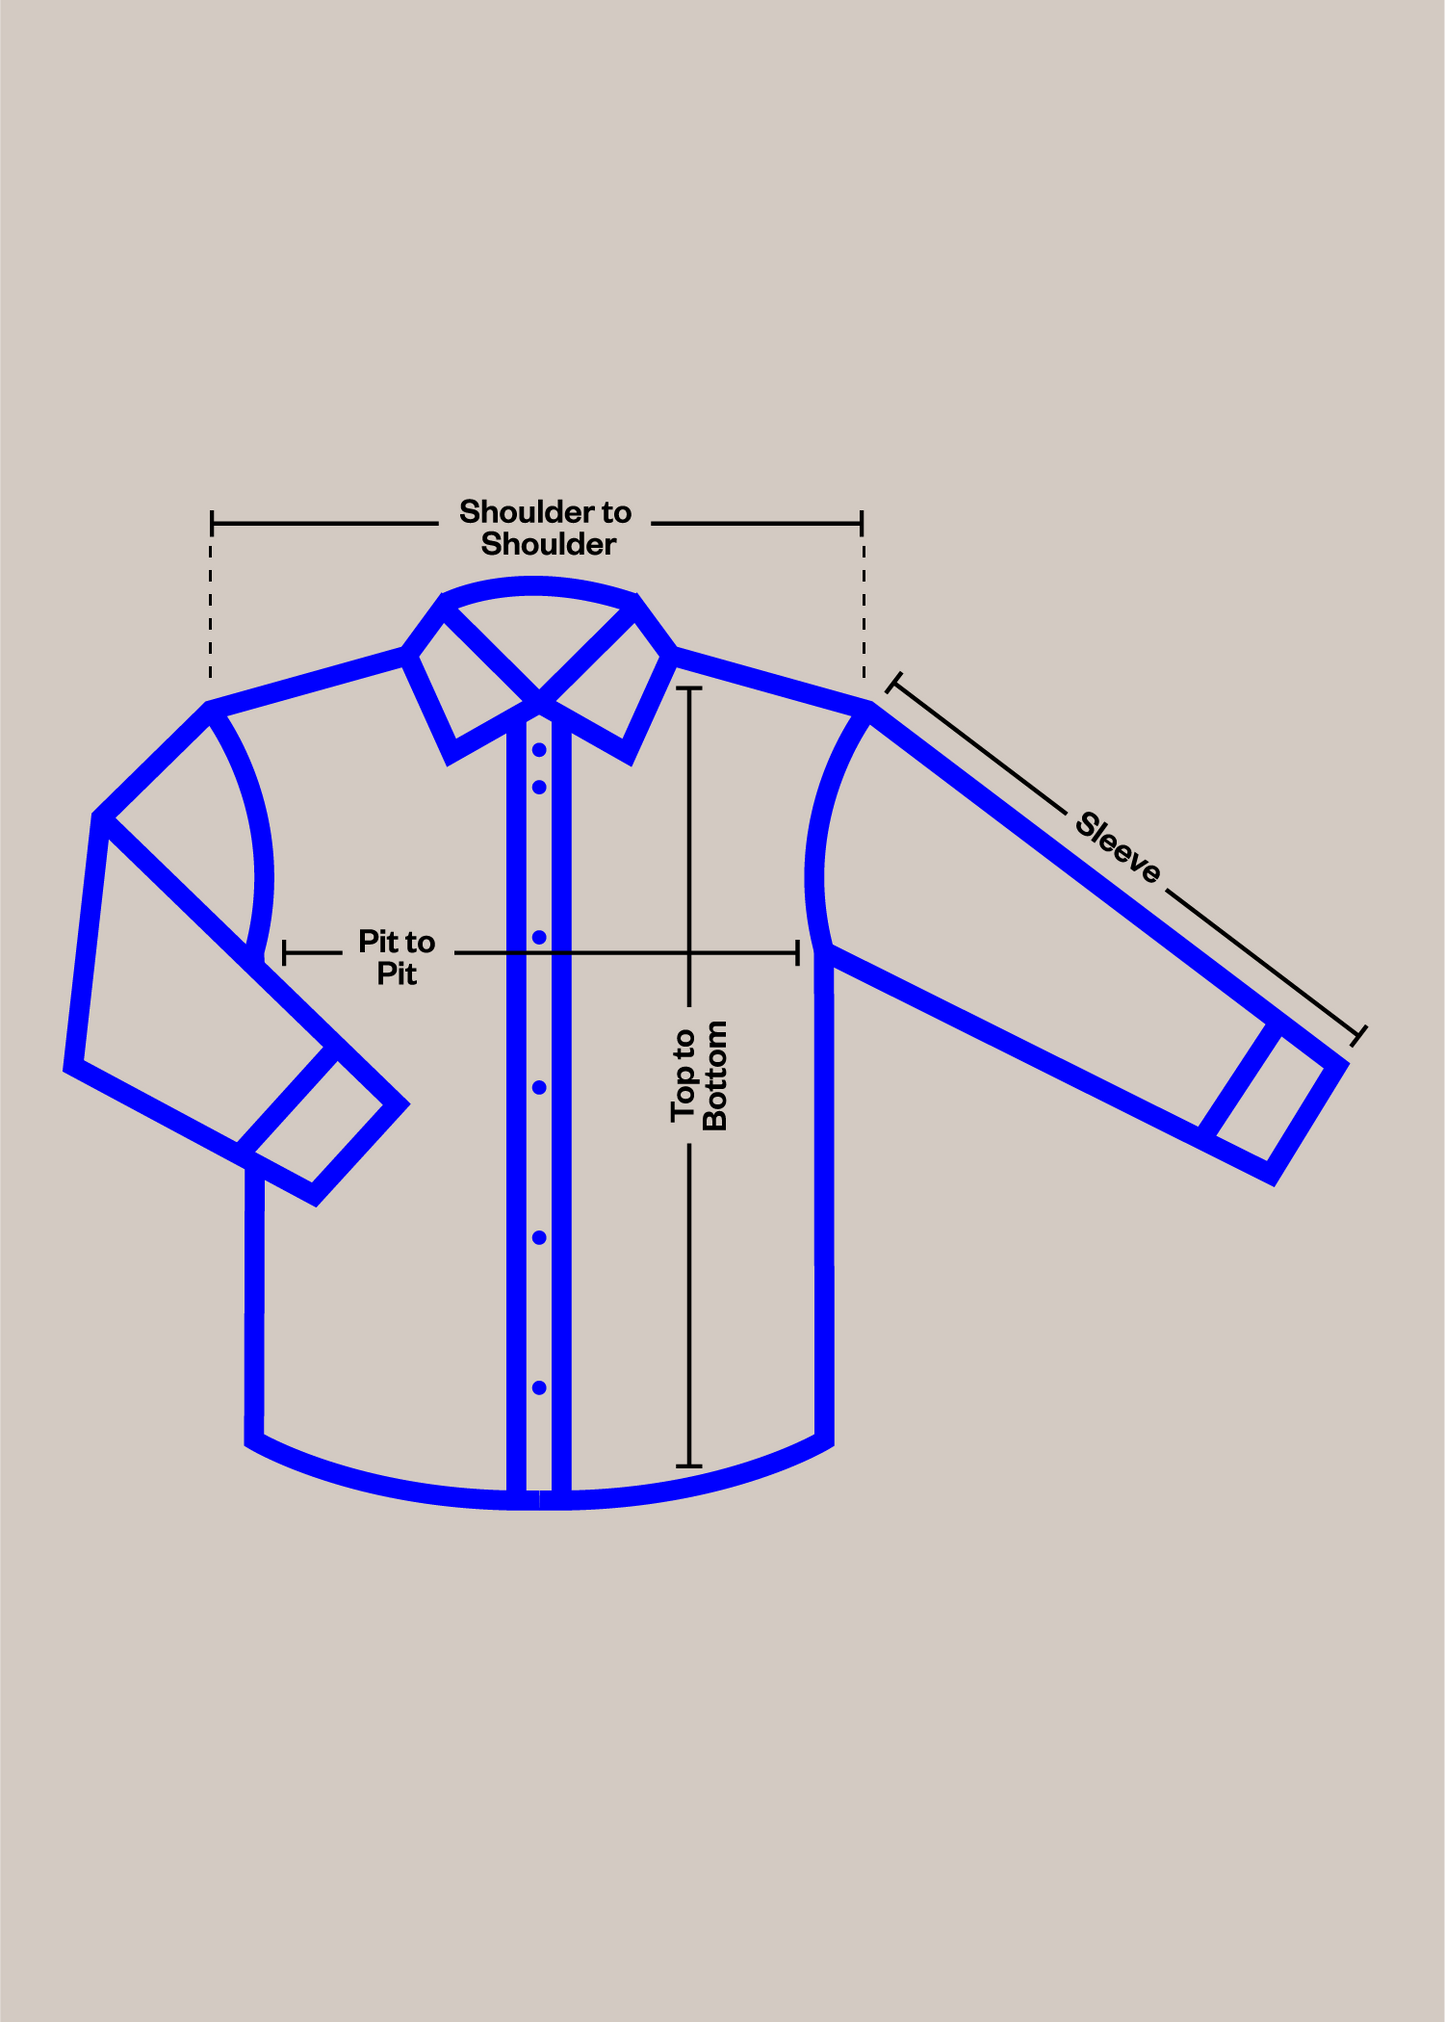 Vintage 1980s Bleu de Travail European Workwear Chore Jacket Size M/L